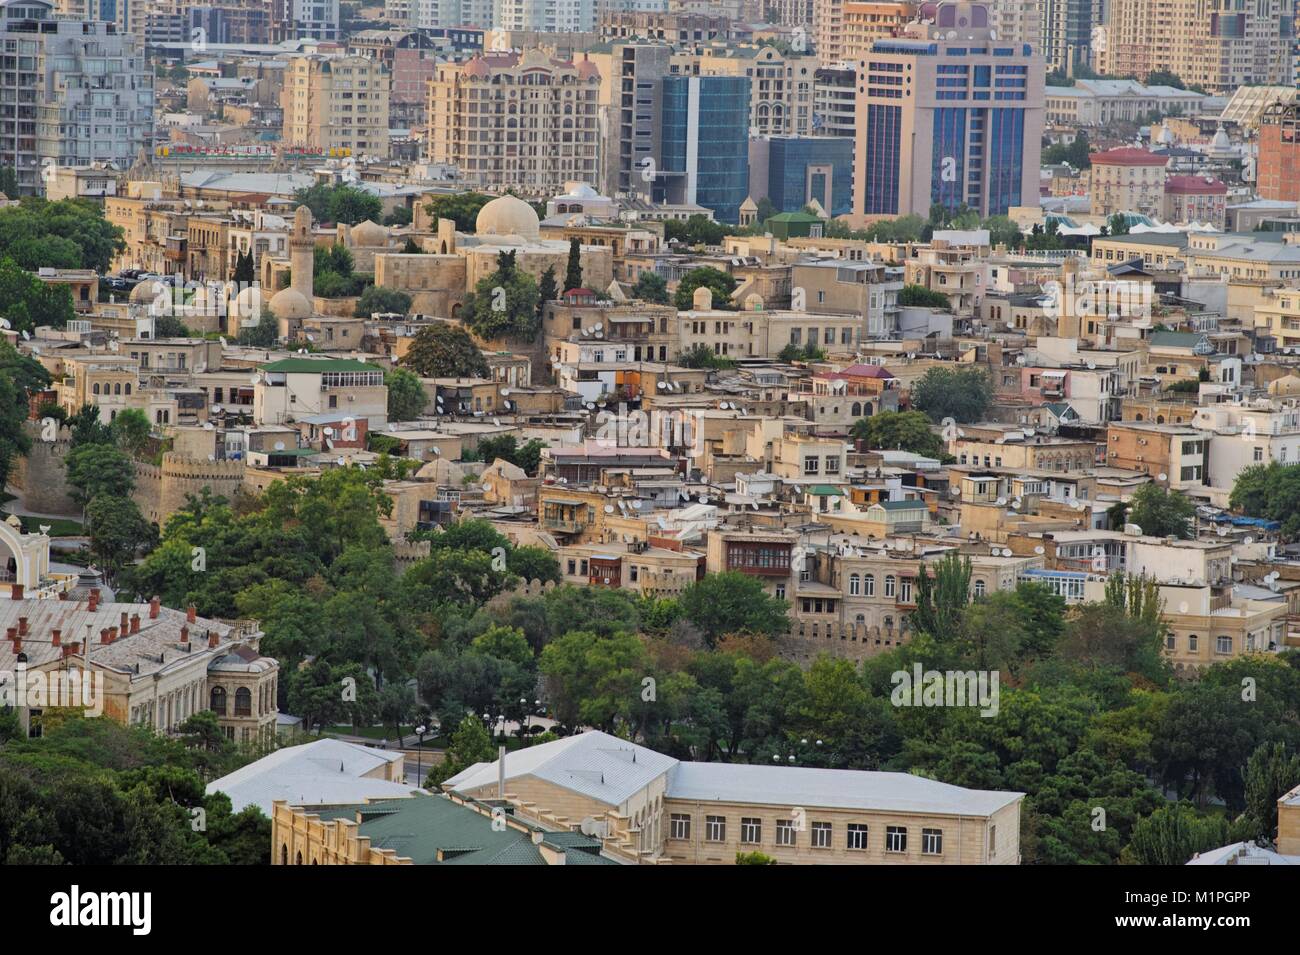 Les toits de la ville de Bakou, Azerbaïdjan 2010 montre le contraste entre les vieux bâtiments dans le centre historique et le plus grand des bâtiments modernes. Banque D'Images